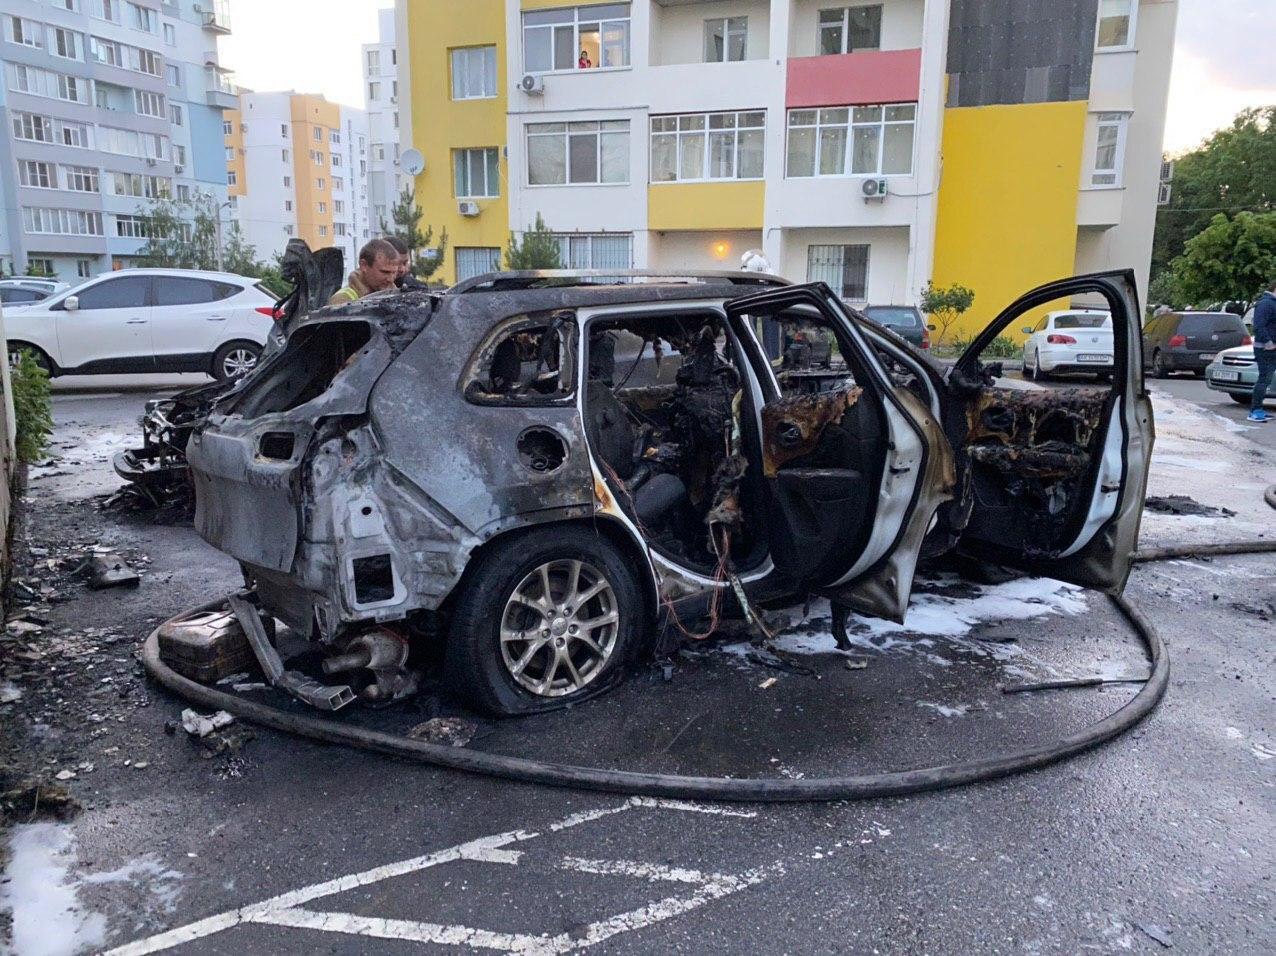 "Невдалі" груди, викидень, помста: навколо спалення авто блогерки в Харкові розігрався скандал